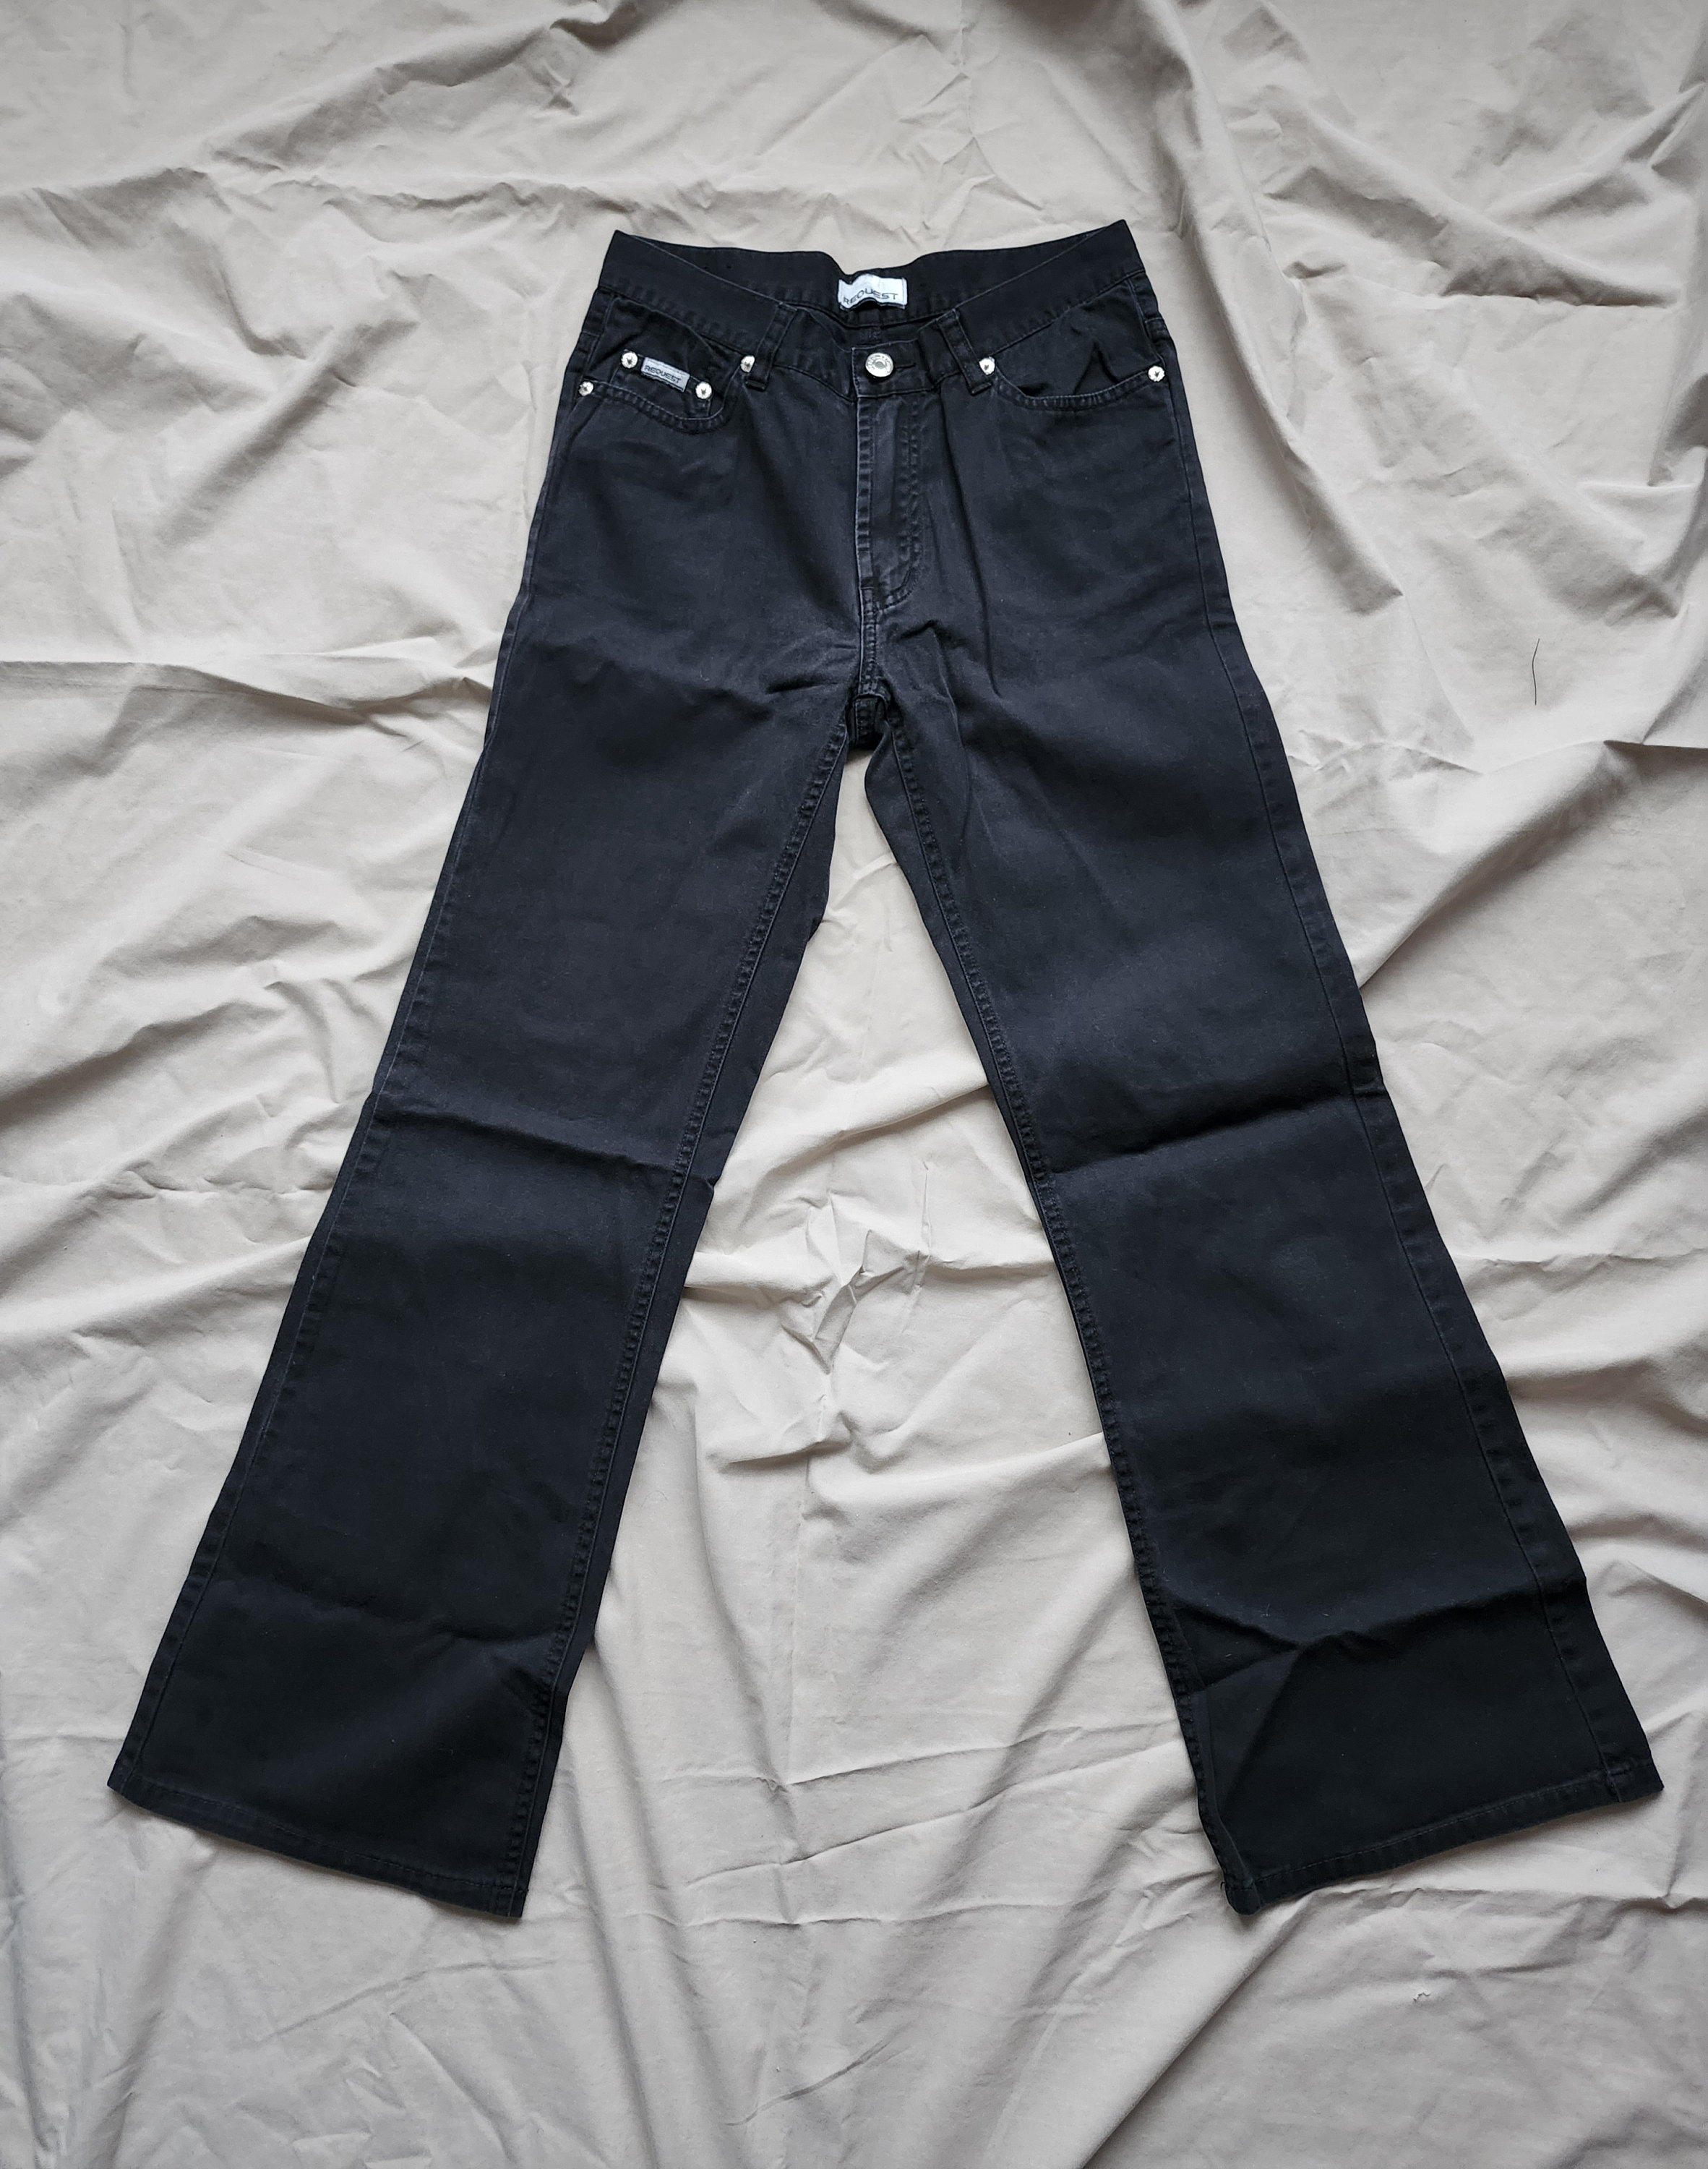 Y2k Jeans Black Low Rise Jeans Minimalist Grunge Boho Jeans 00s